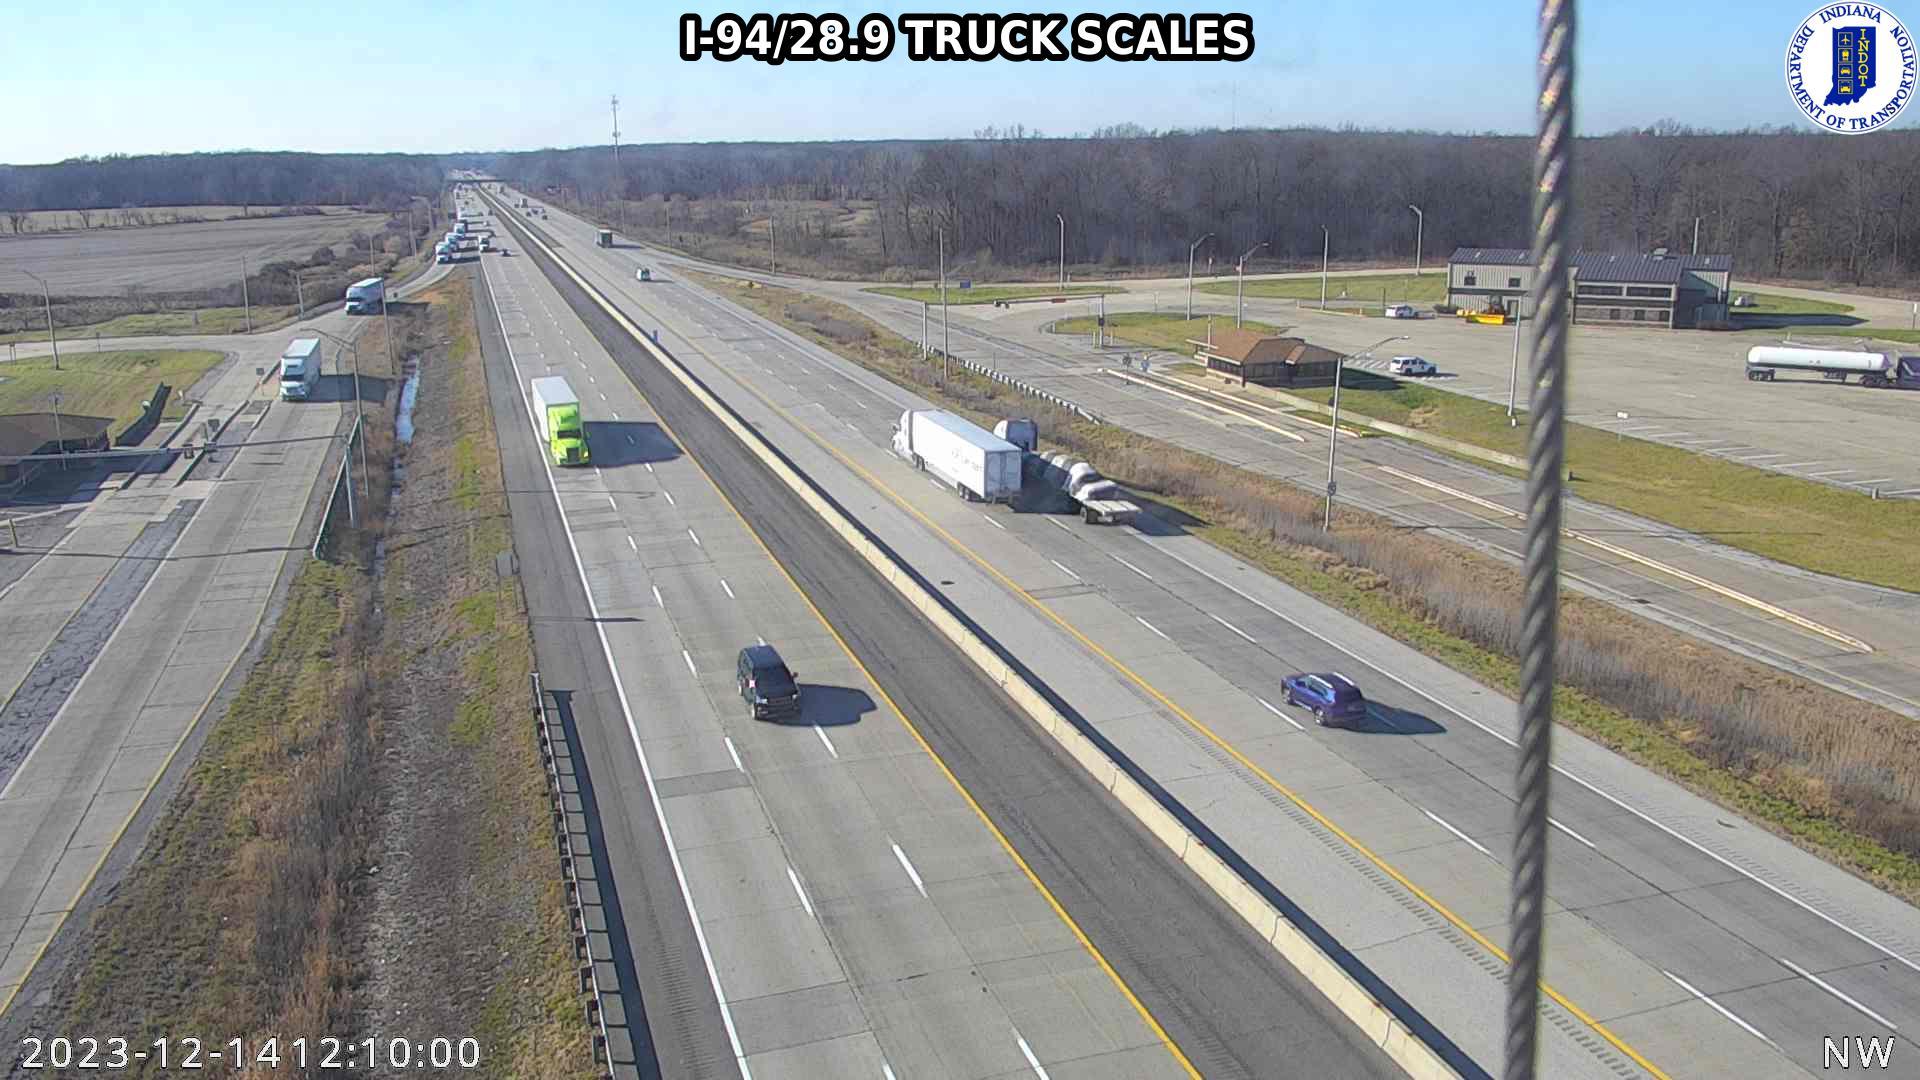 Furnessville: I-94: I-94/28.9 TRUCK SCALES: I-94/28.9 TRUCK SCALES Traffic Camera